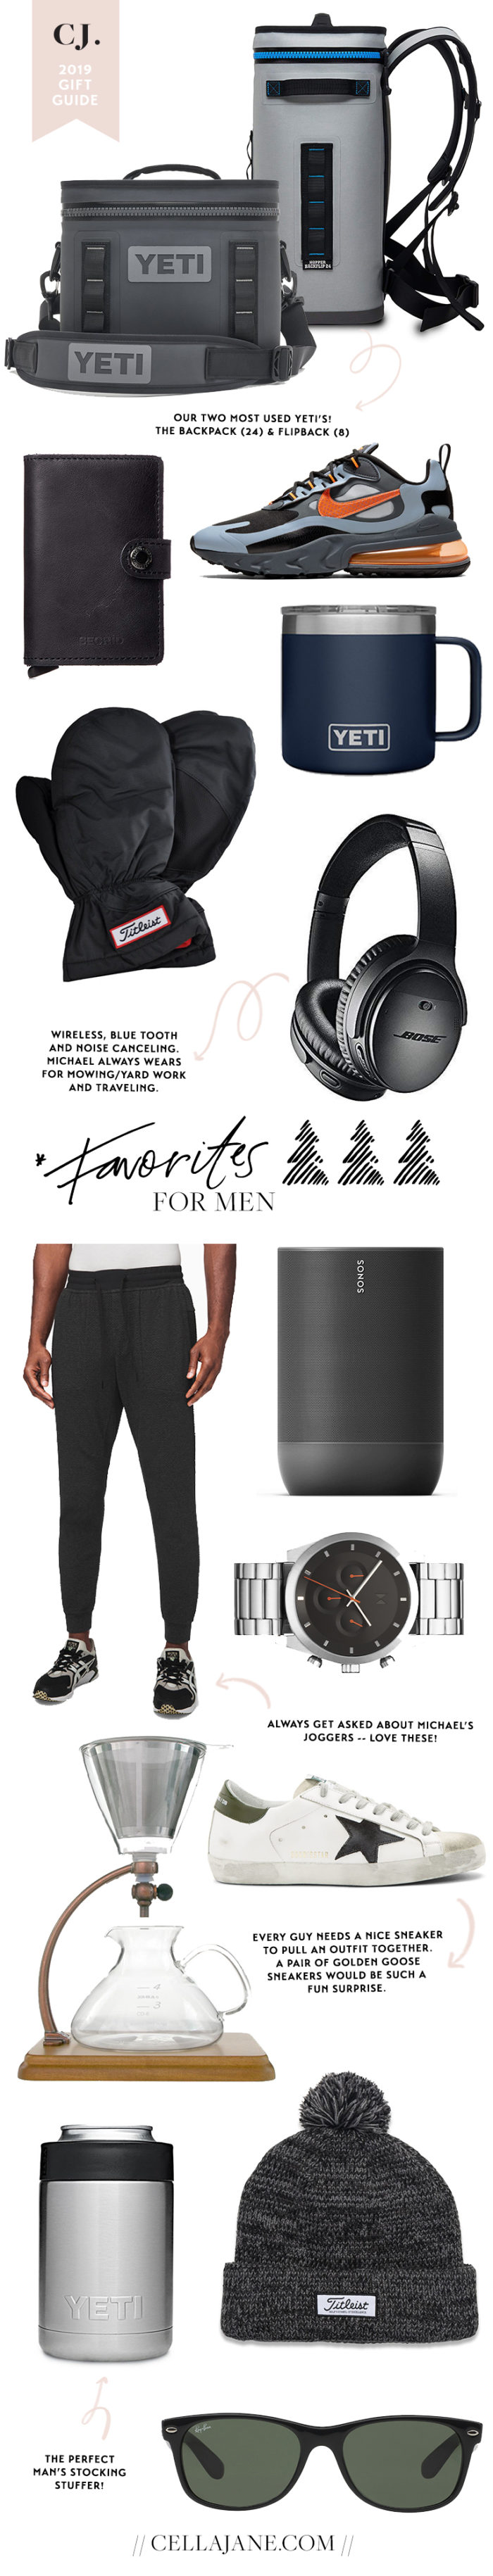 Gift Guide: For Men